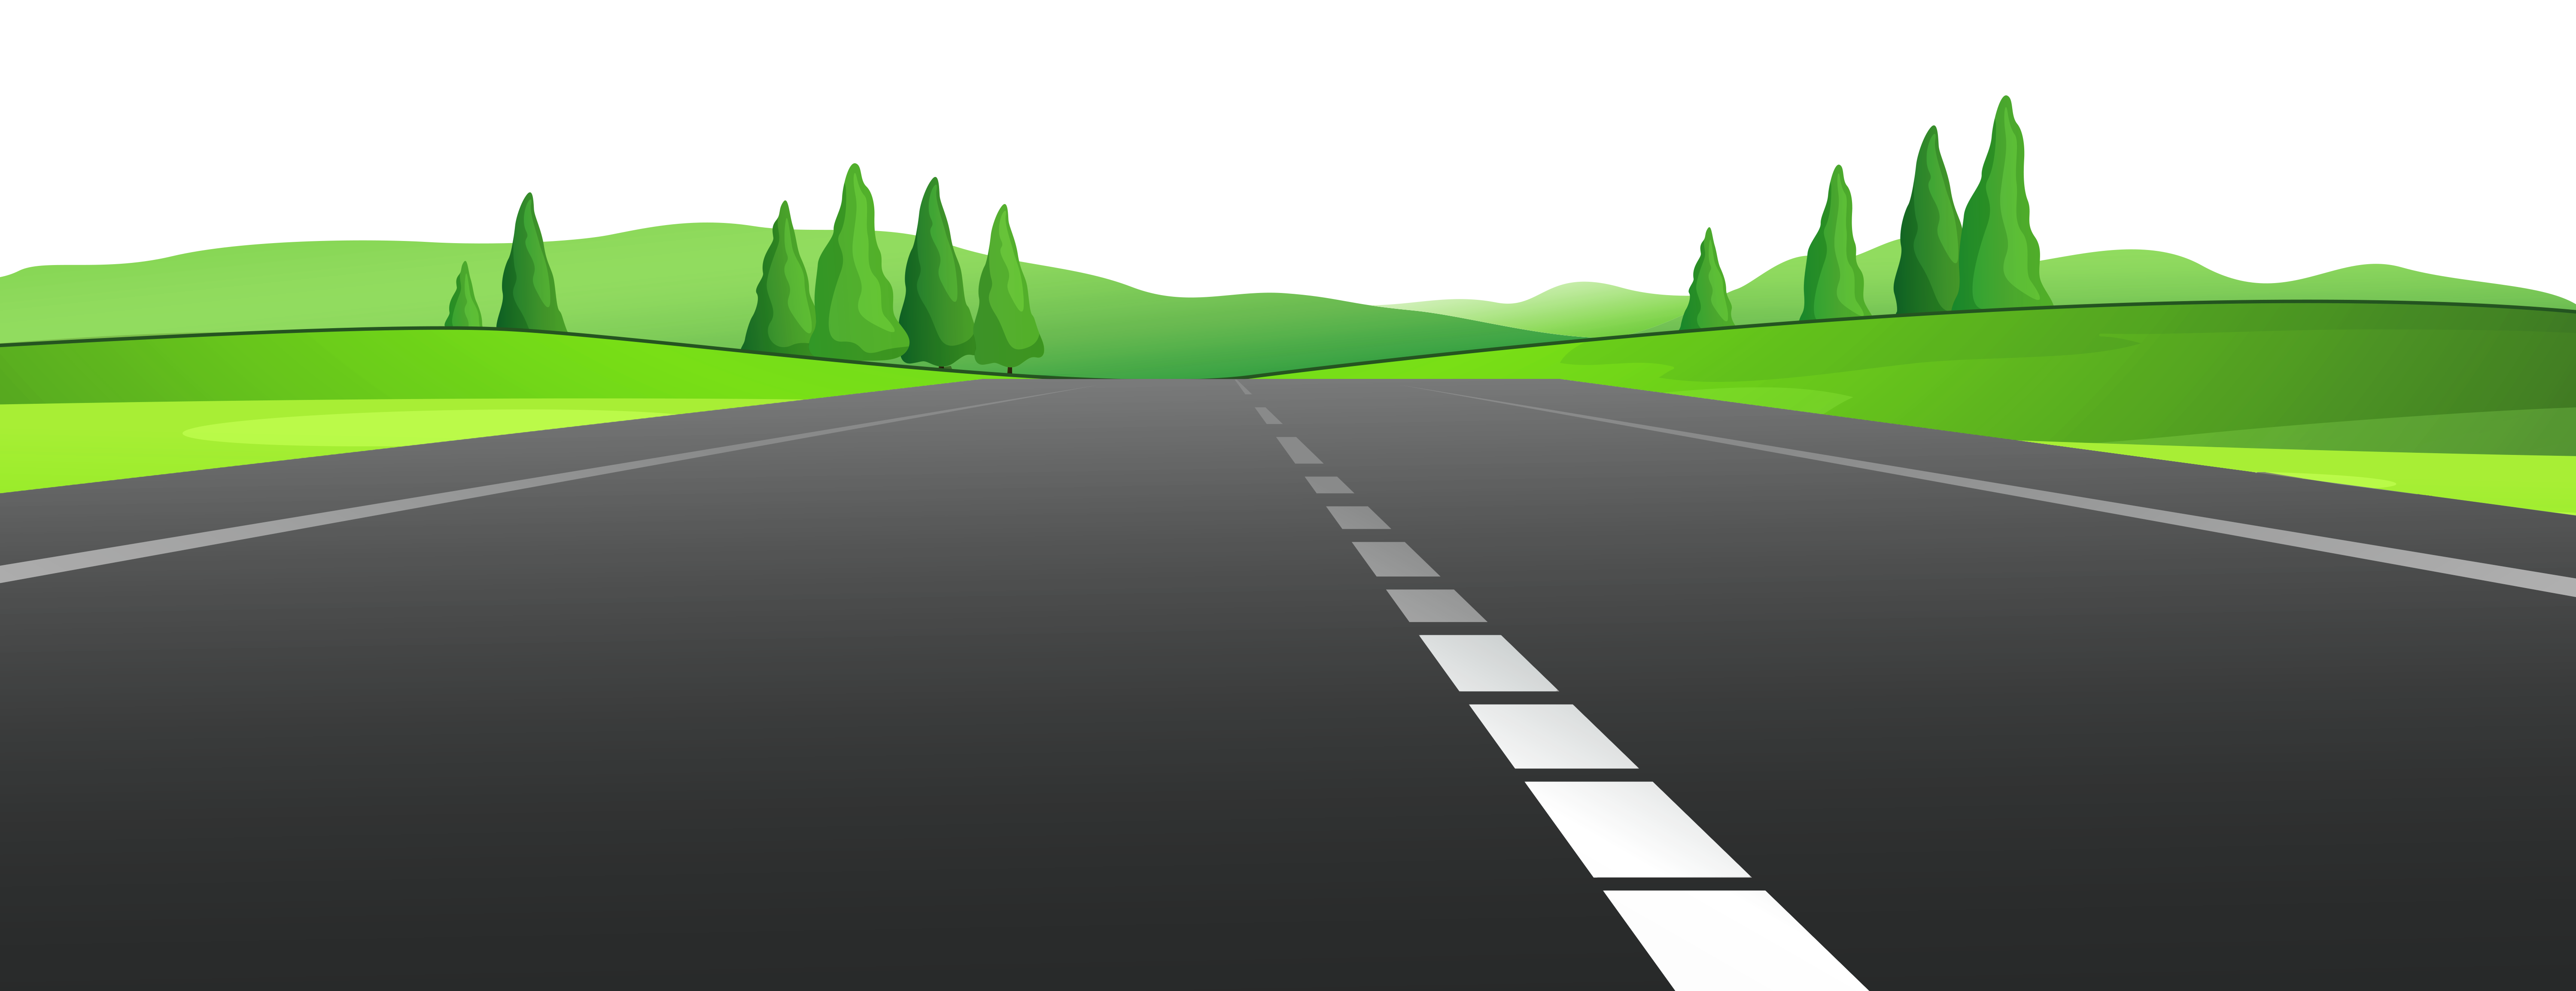 Landscape Roads Clipart - Roads Clipart